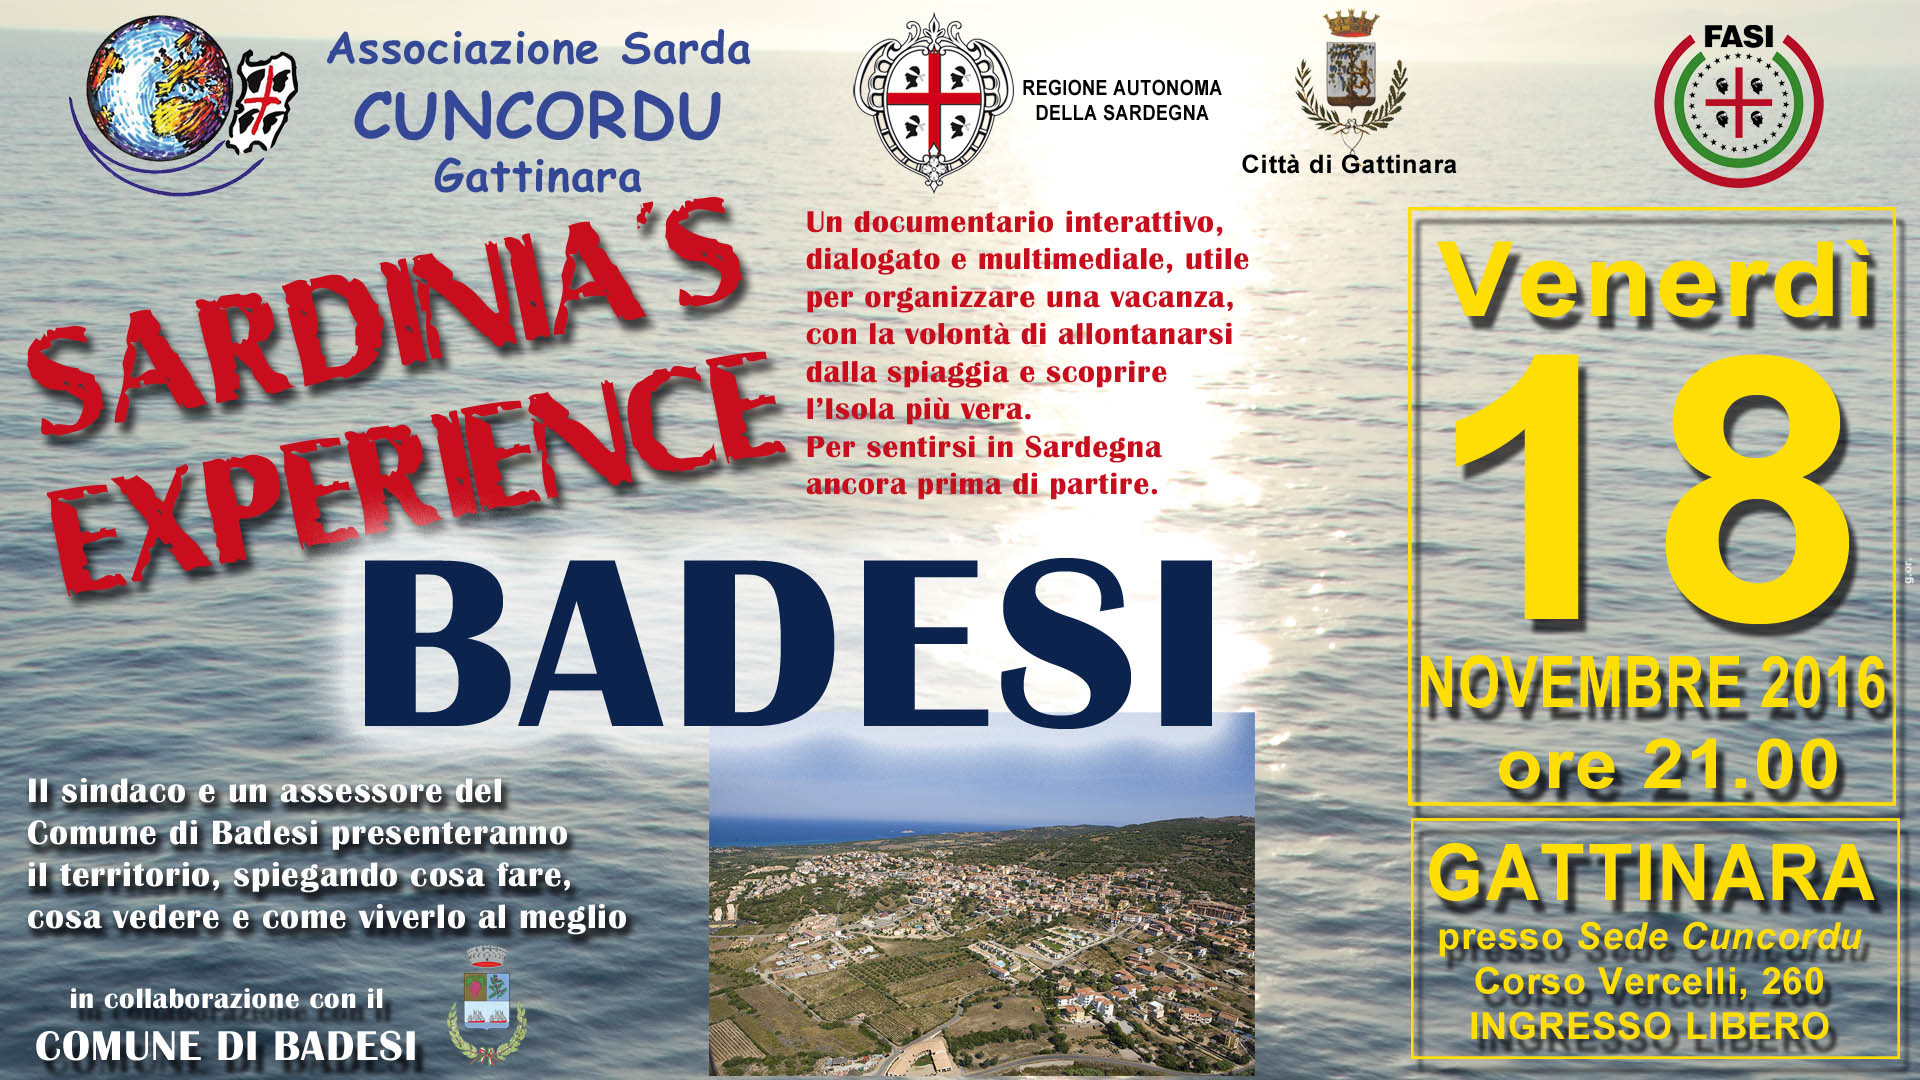 Sardinia's Experience - Badesi